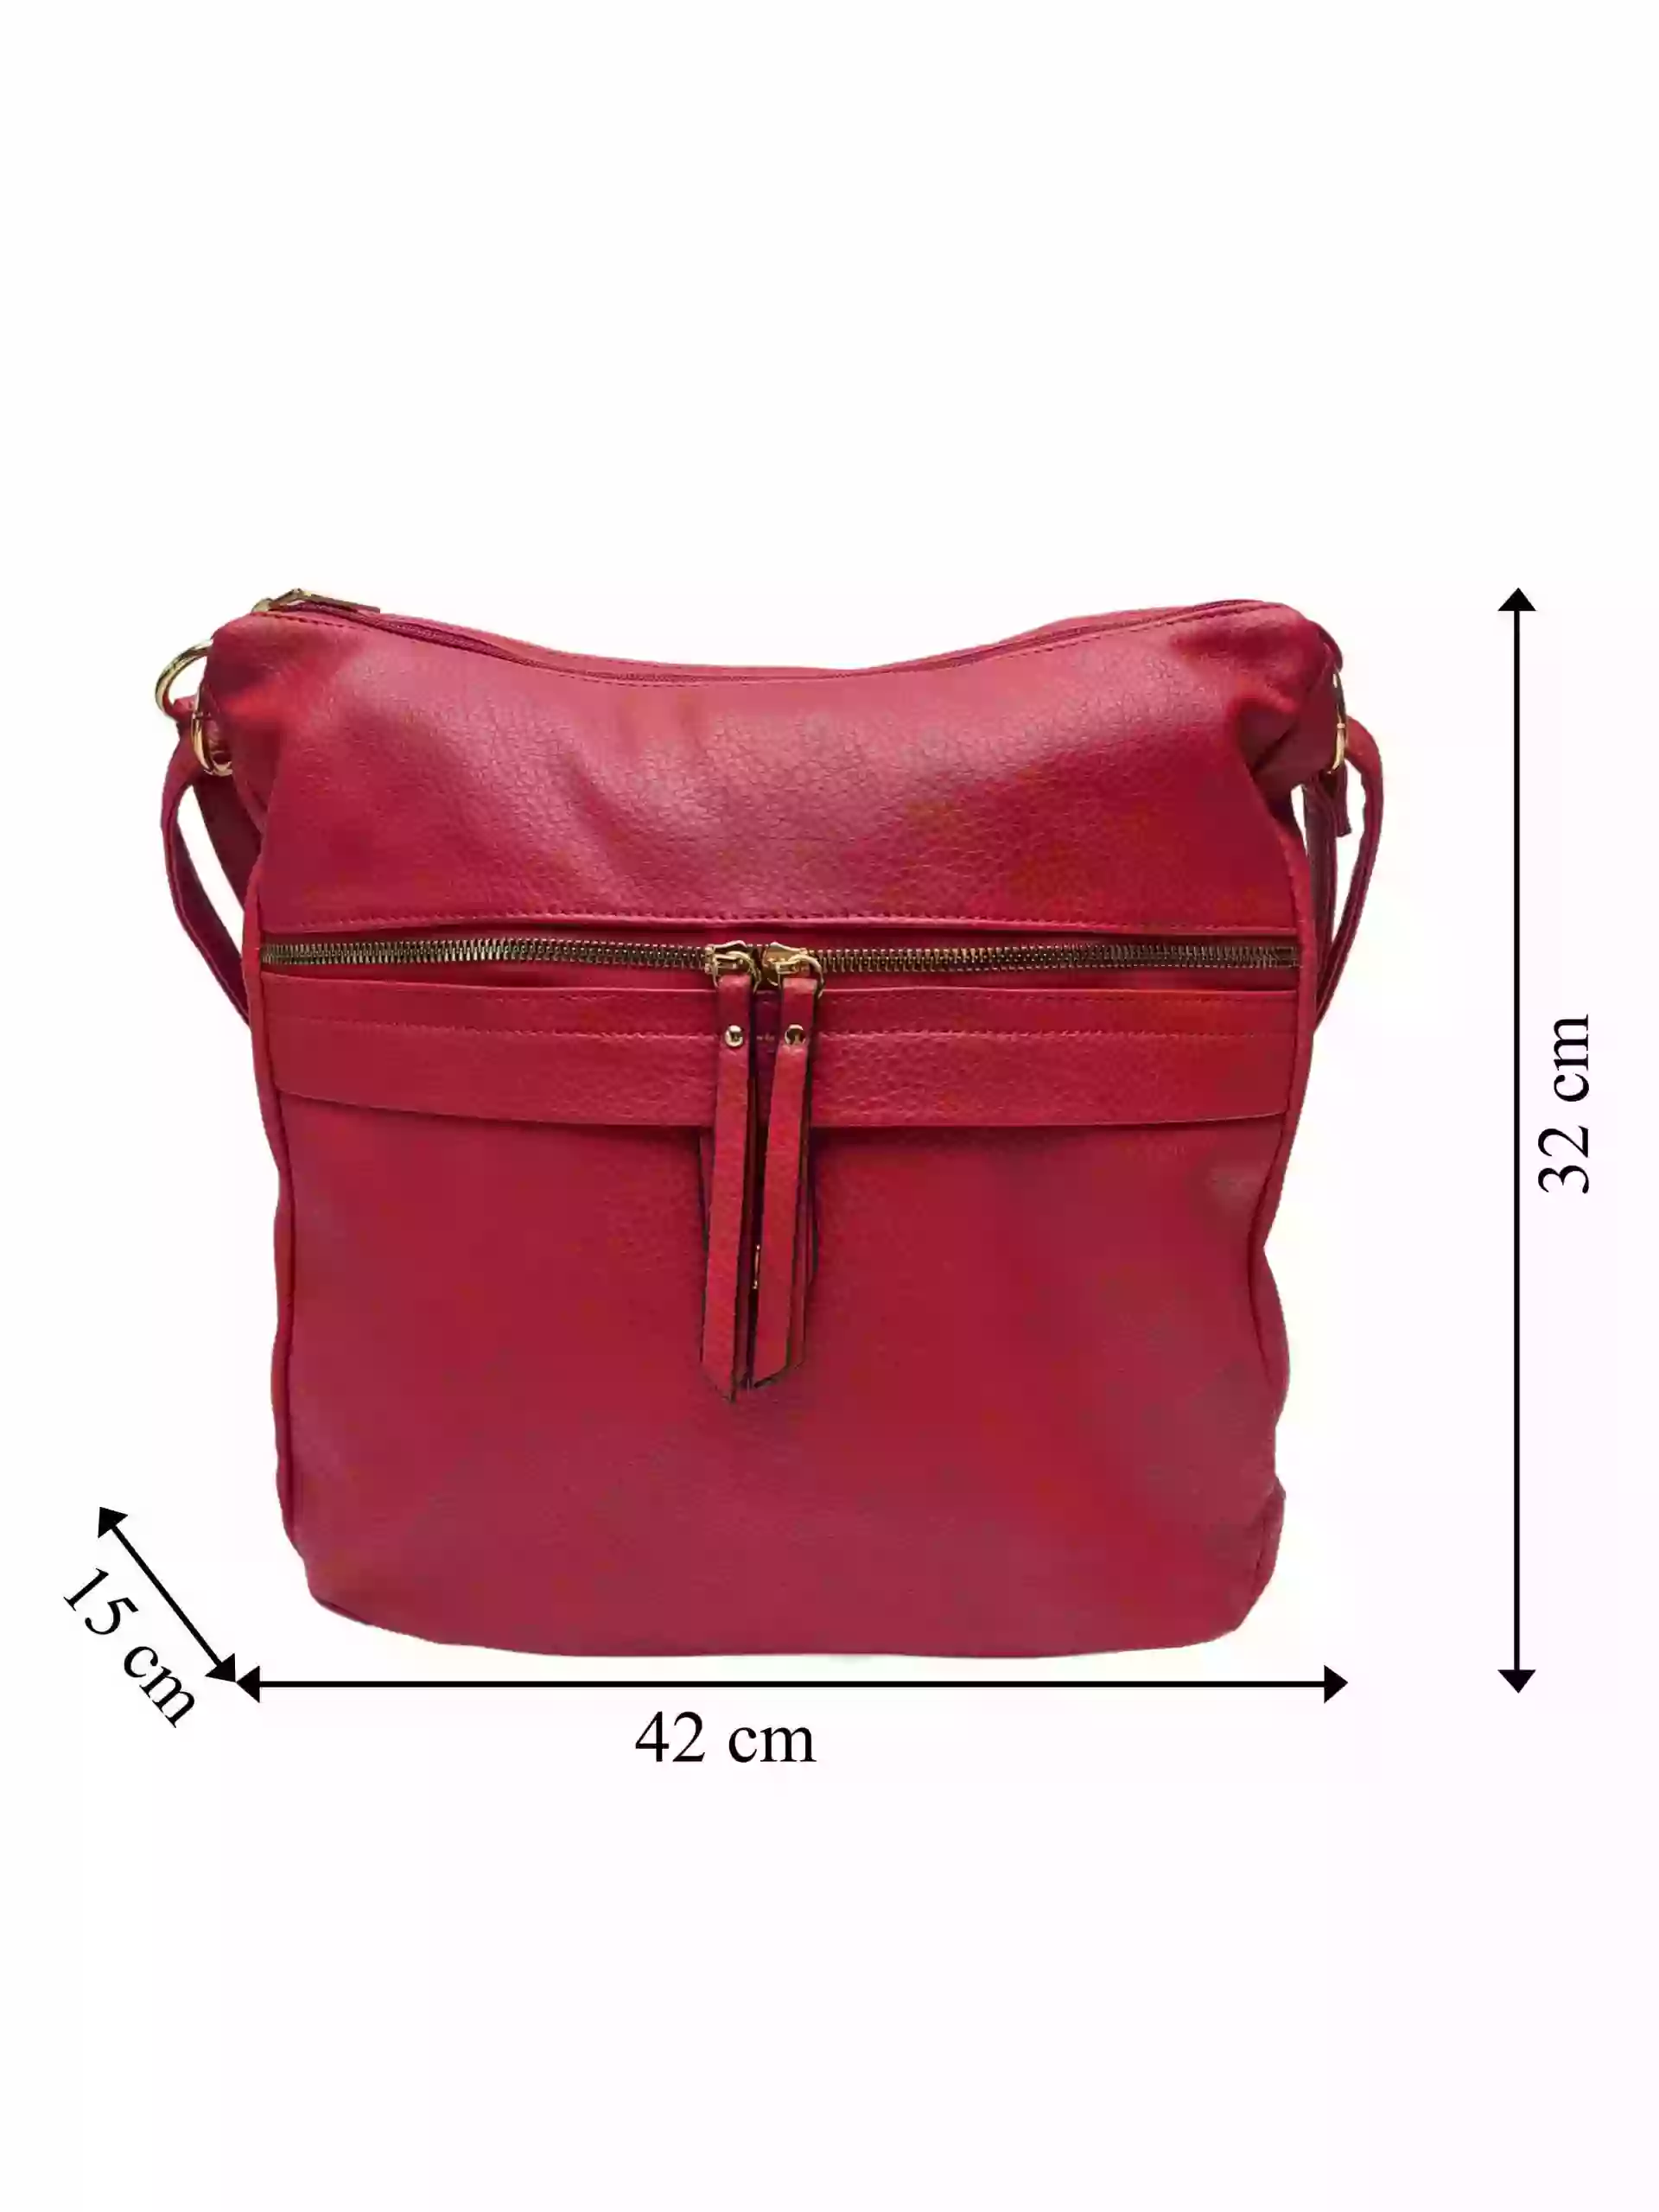 Velký tmavě červený kabelko-batoh 2v1 s kapsou, Int. Company, H23, přední strana kabelko-batohu 2v1 s rozměry